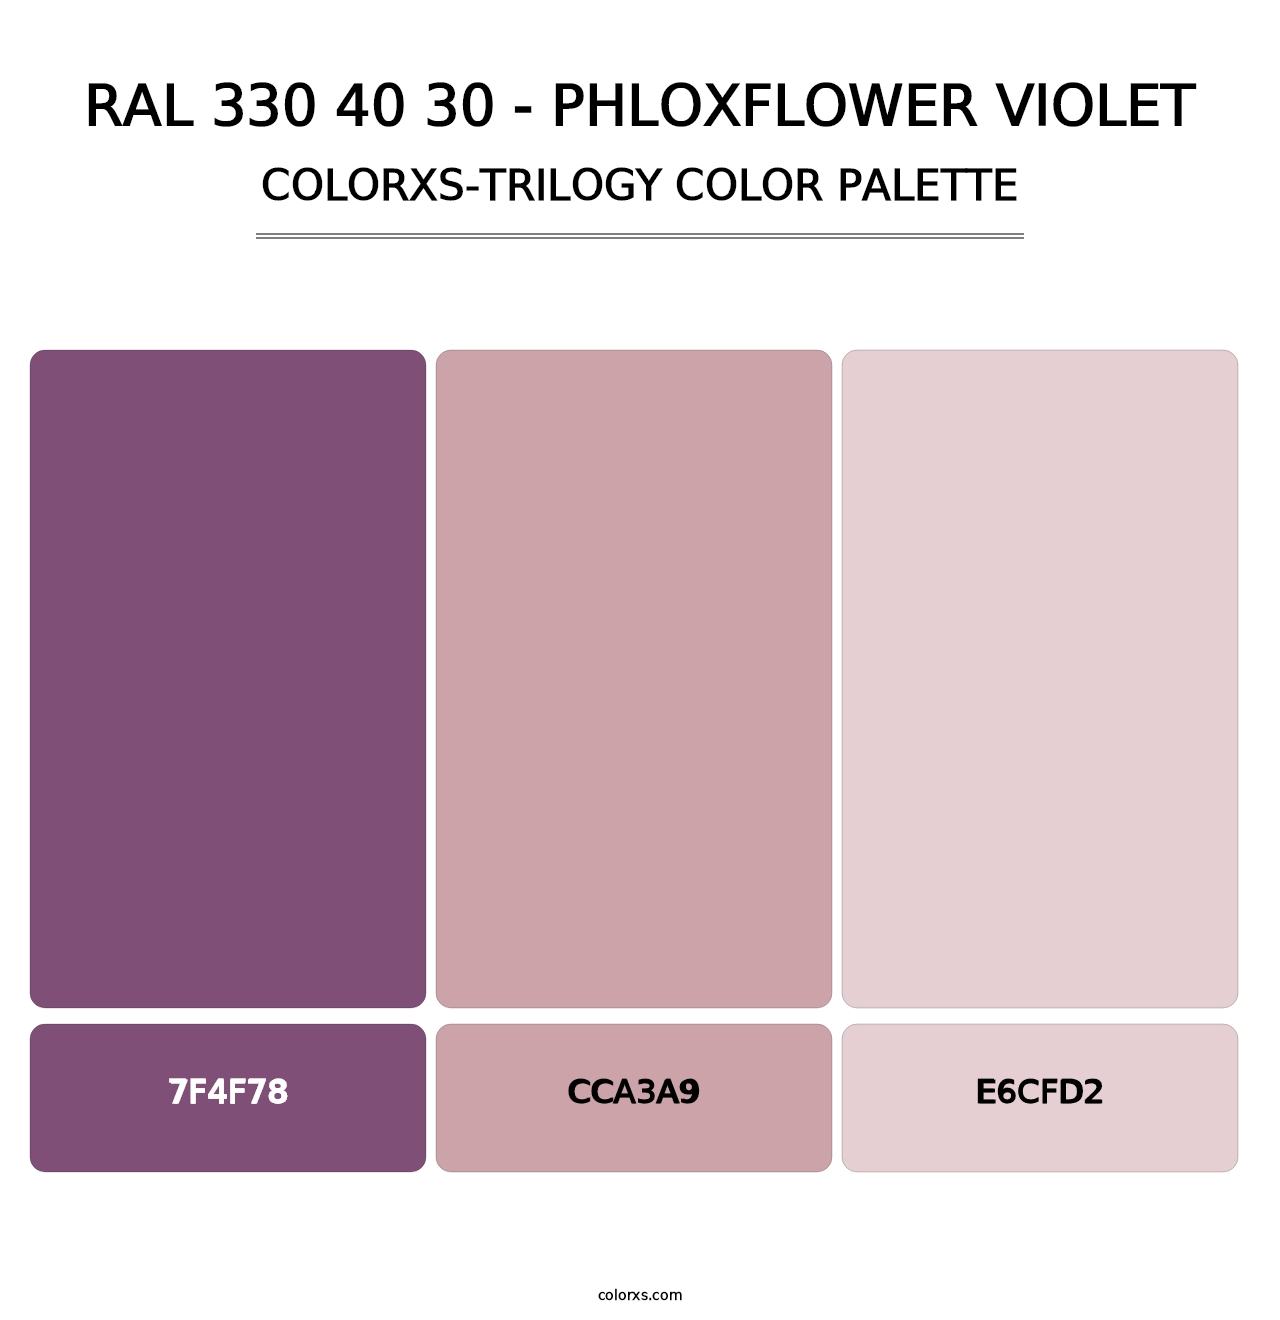 RAL 330 40 30 - Phloxflower Violet - Colorxs Trilogy Palette